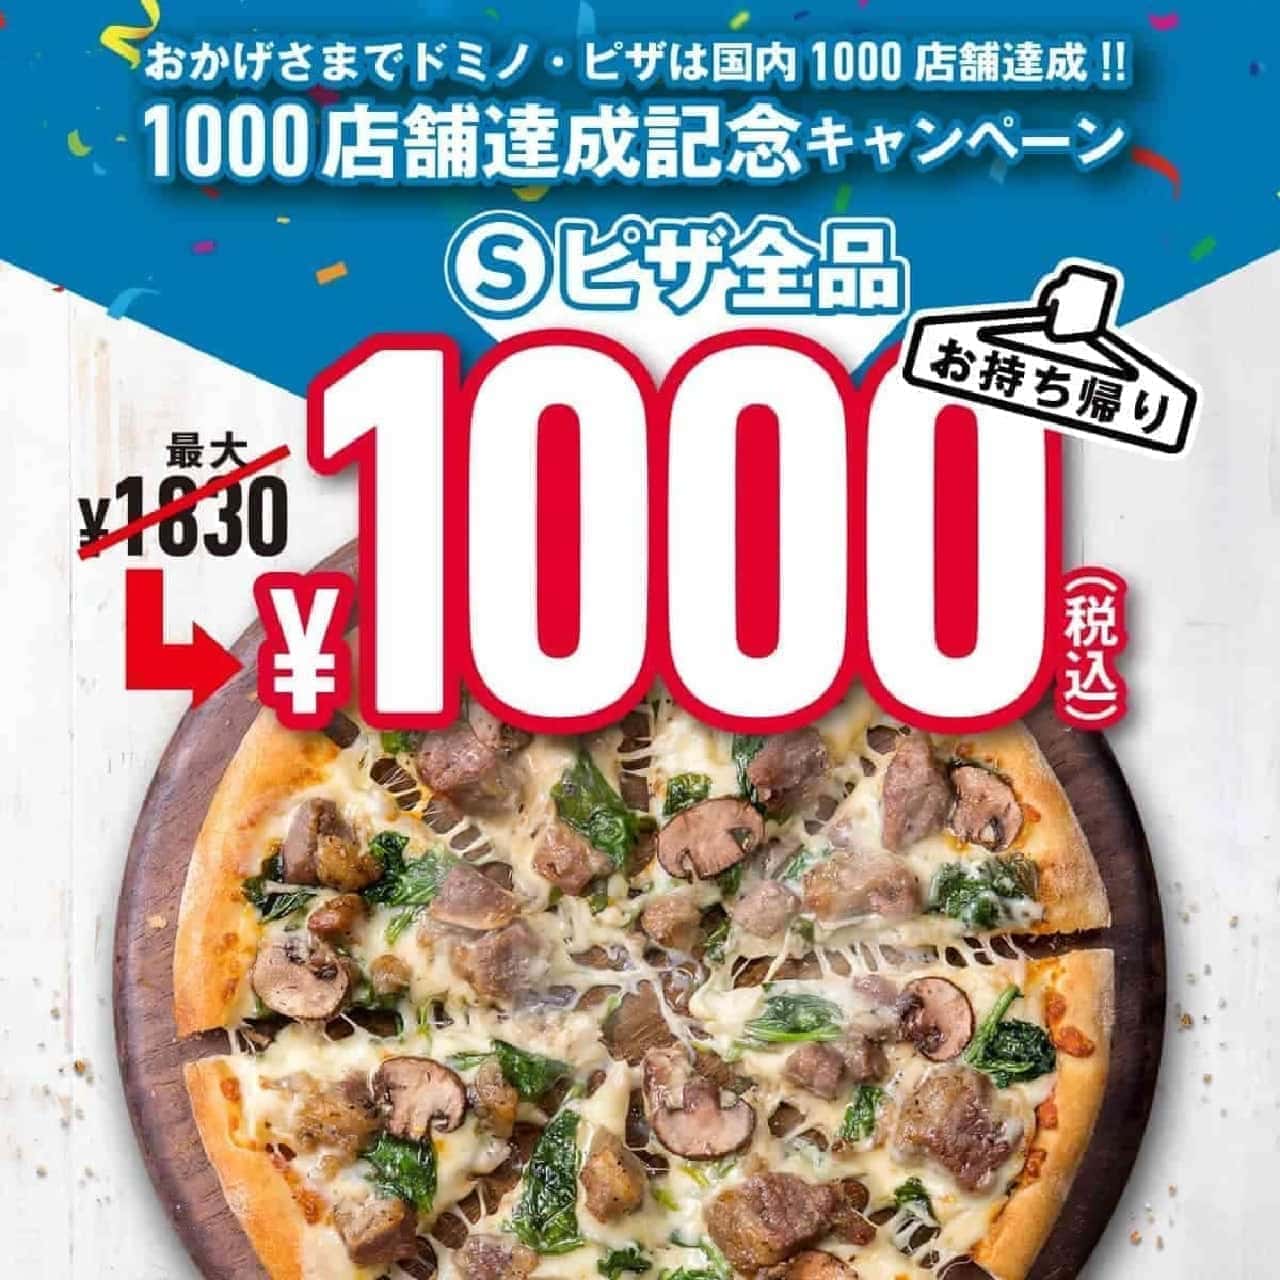 ドミノ・ピザ「1000店舗達成記念キャンペーン」